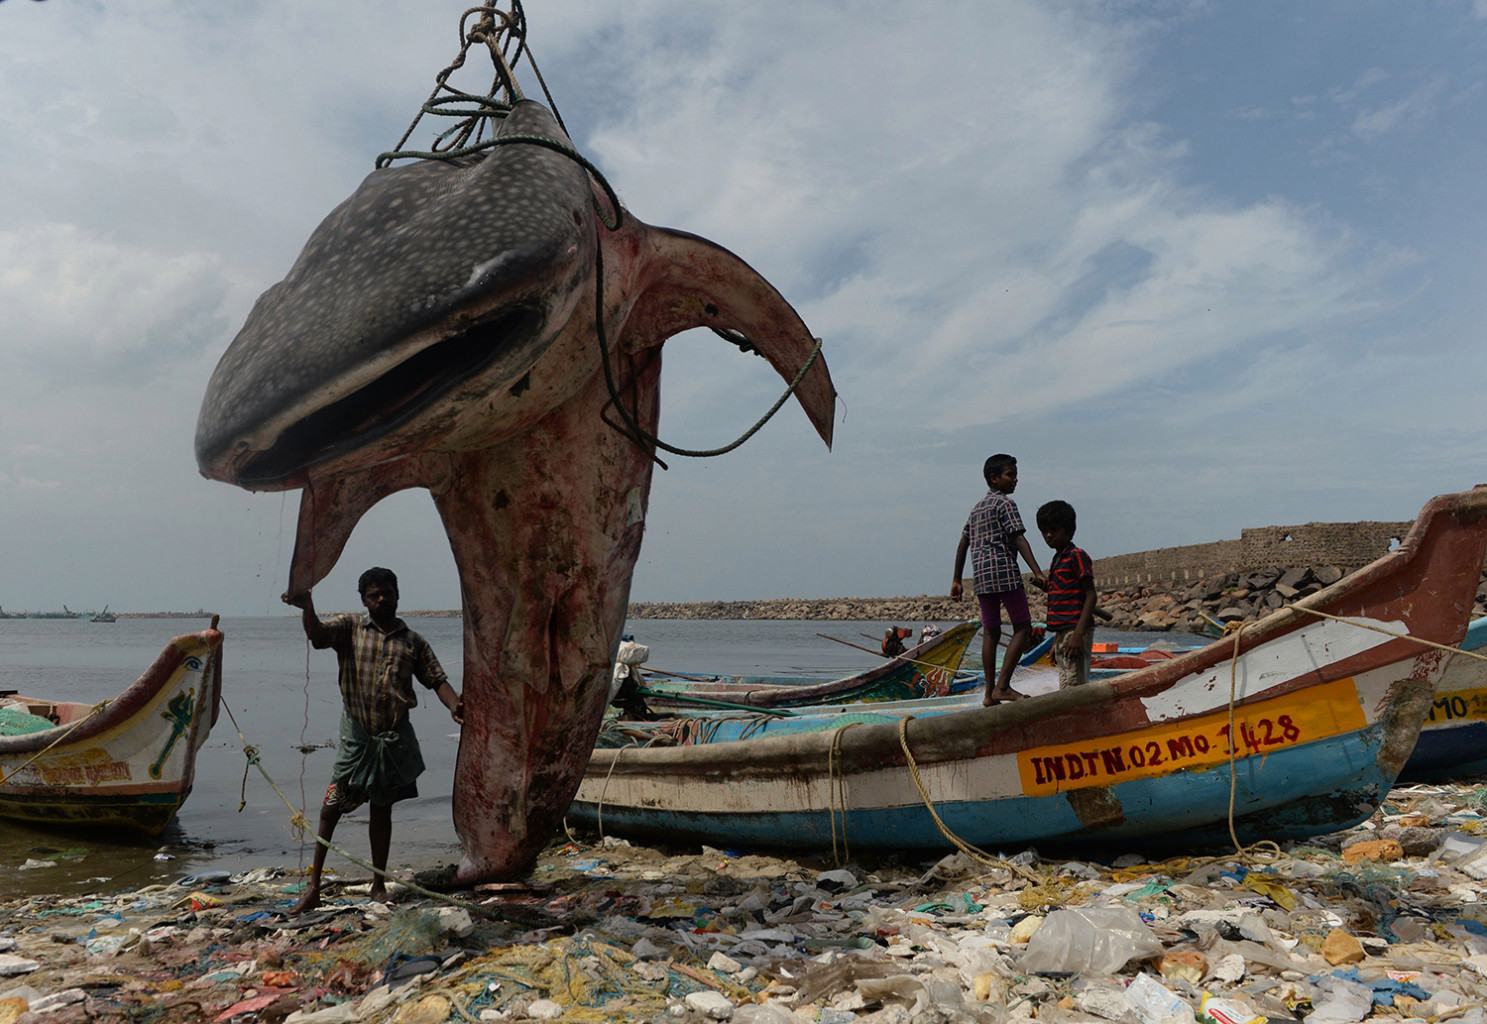   Một người đàn ông Ấn Độ đứng cạnh một con cá mập voi dạt vào bờ và được một cần cẩu nhấc ra để kiểm tra tại cảng cá Kasimedu ở Chennai vào ngày 27/7.  